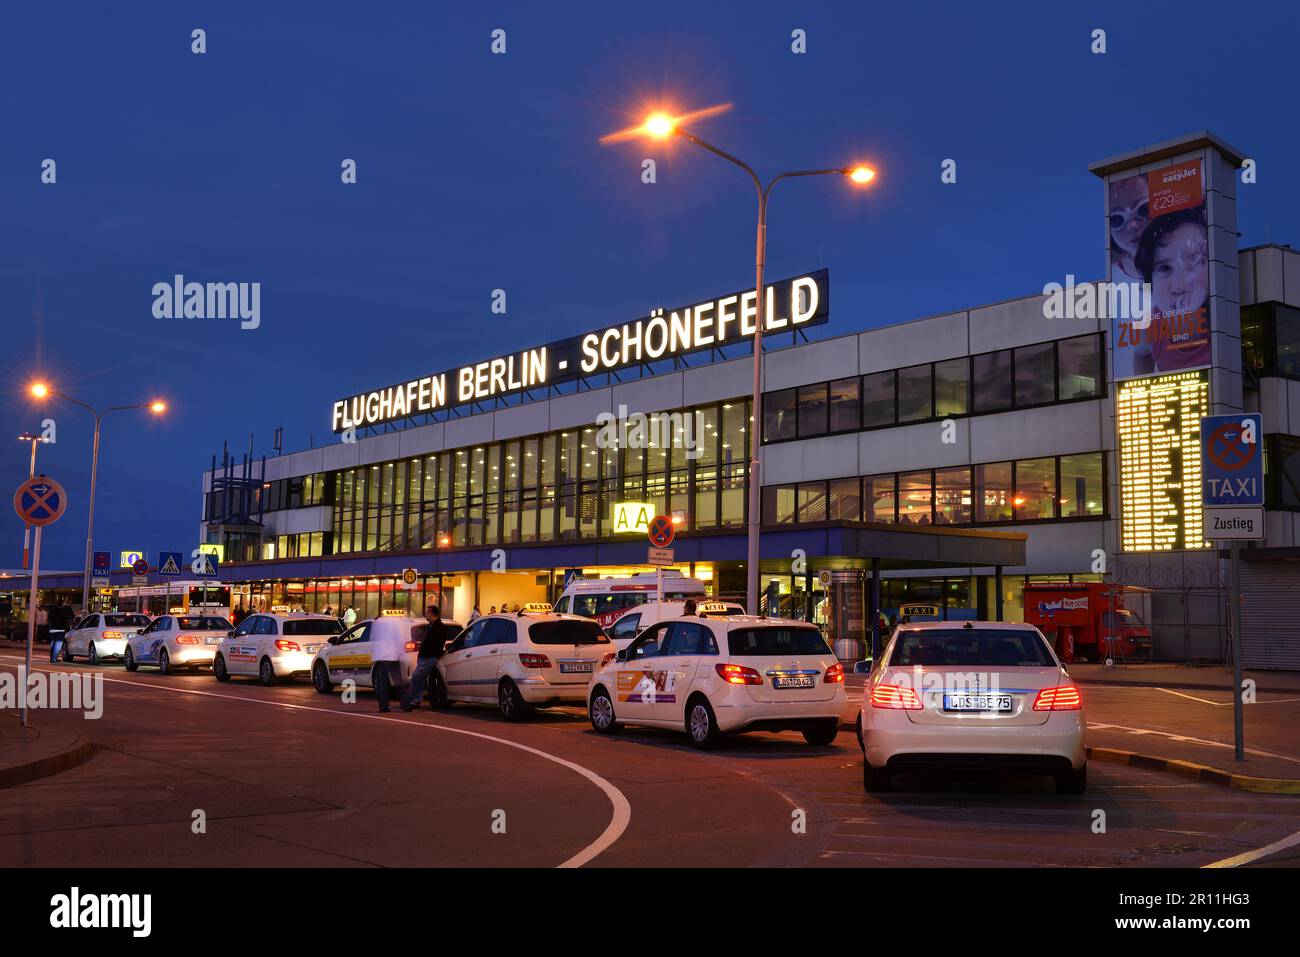 Aéroport de Schoenefeld, Brandebourg, Allemagne Banque D'Images